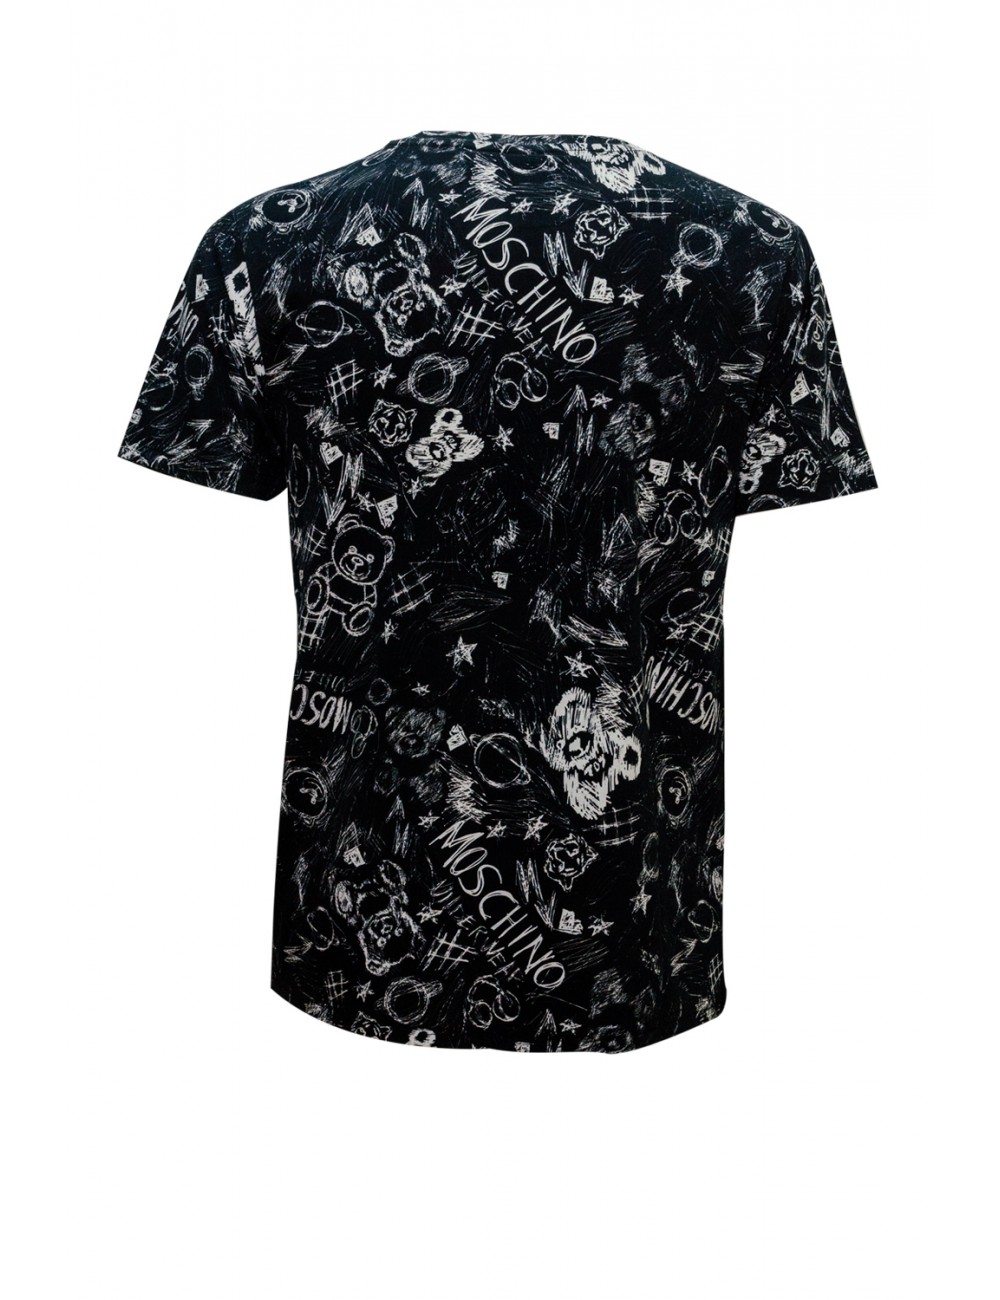 t-shirt moschino UOMO NERA 1555 - V1A0708 - 4412 vista frontale